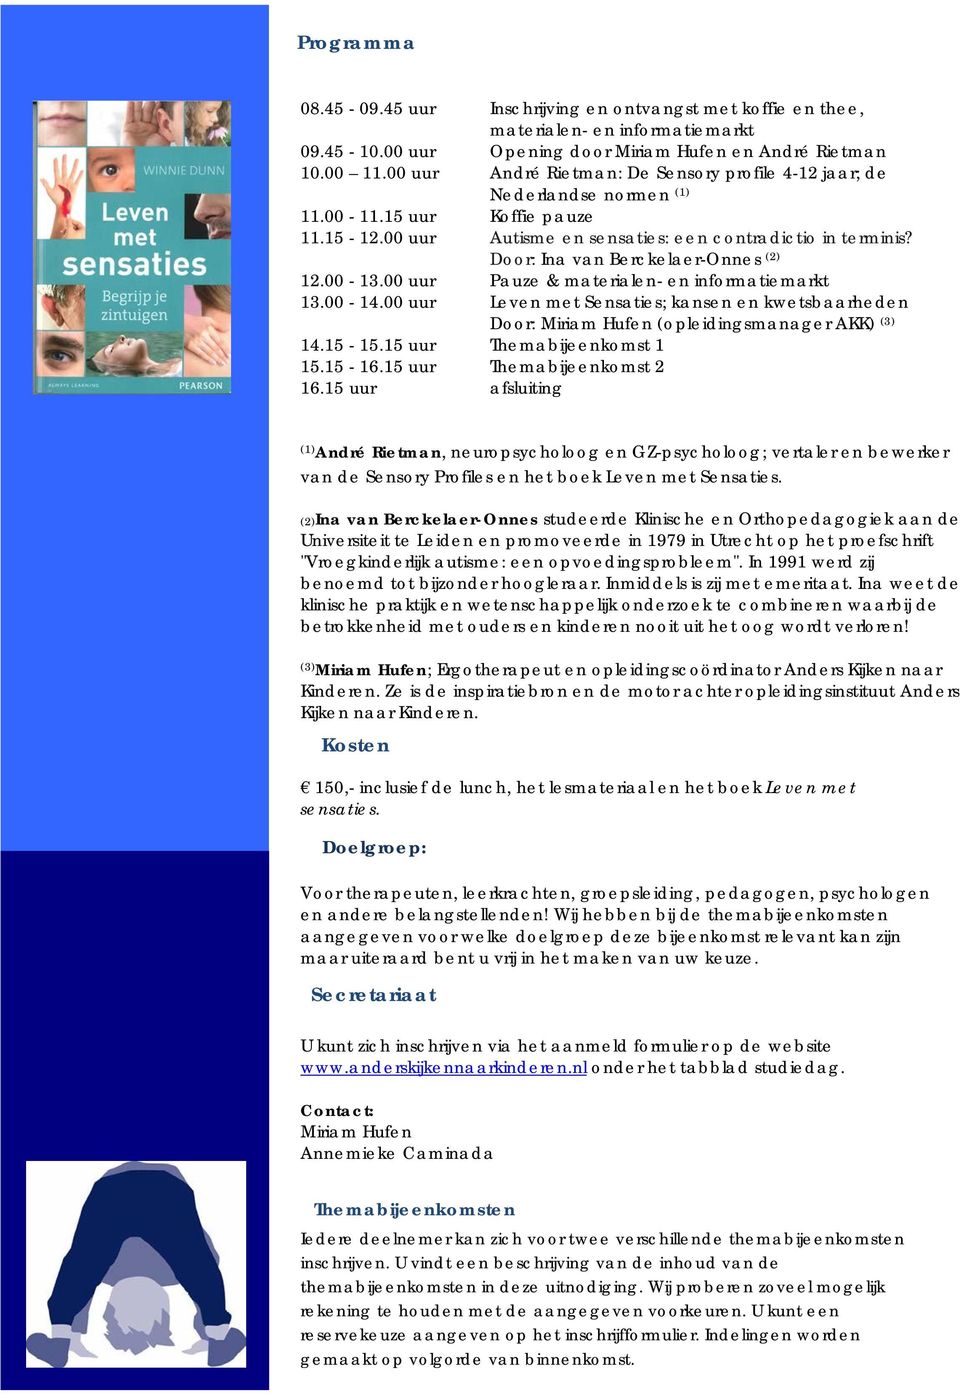 Door: Ina van Berckelaer-Onnes (2) 12.00-13.00 uur Pauze & materialen- en informatiemarkt 13.00-14.00 uur Leven met Sensaties; kansen en kwetsbaarheden Door: (opleidingsmanager AKK) (3) 14.15-15.